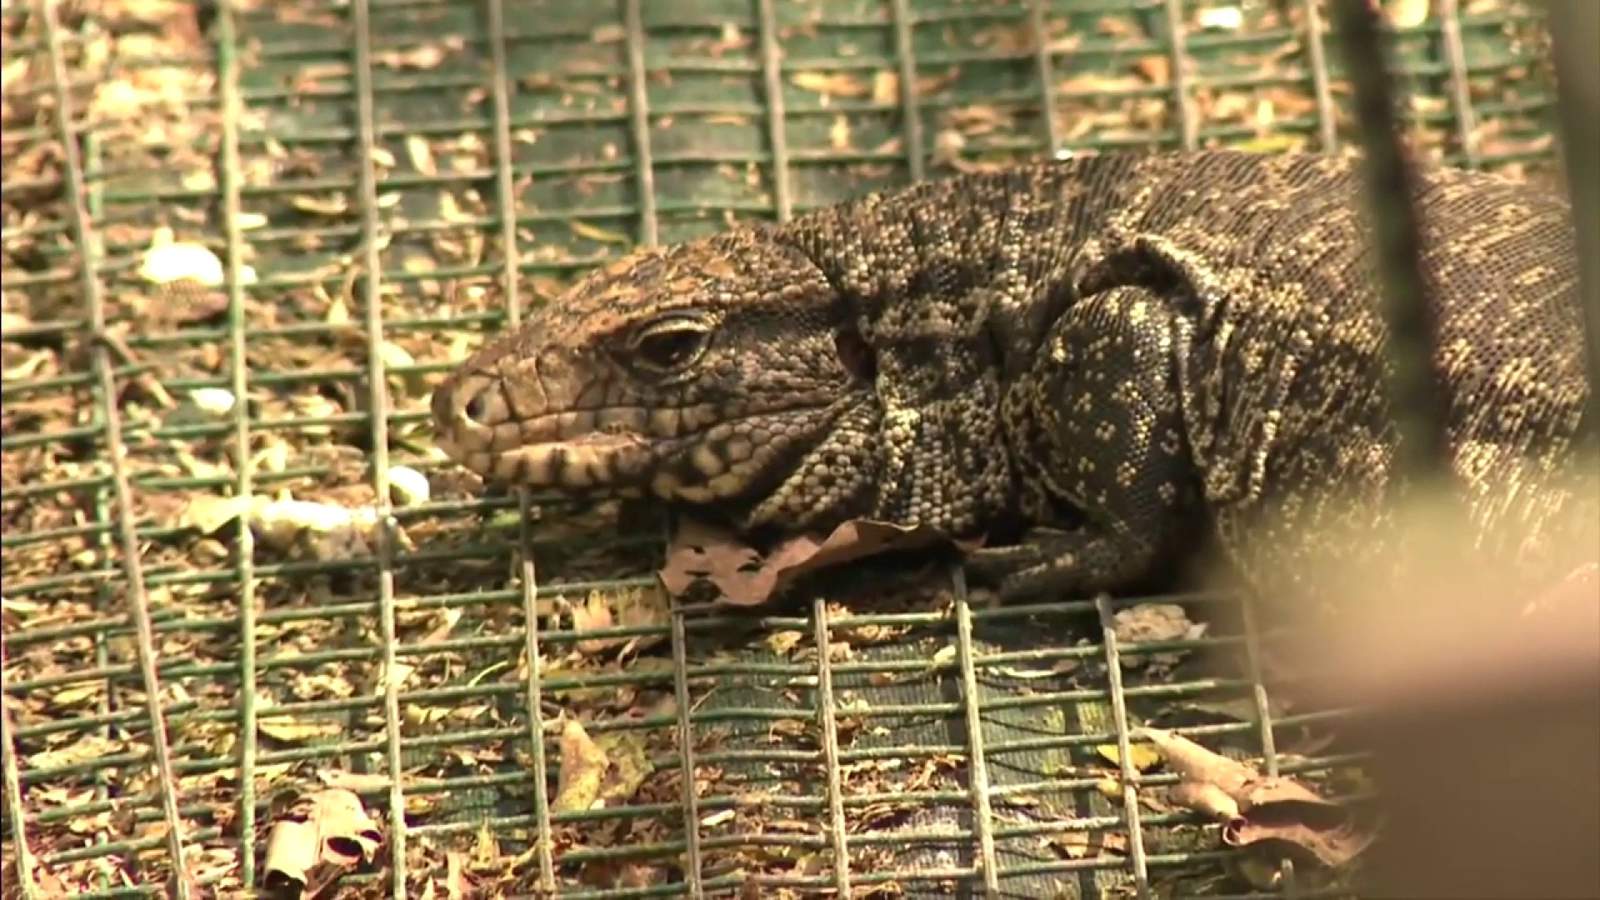 Florida restringe venta de ciertos reptiles en medio de temores de especies invasoras